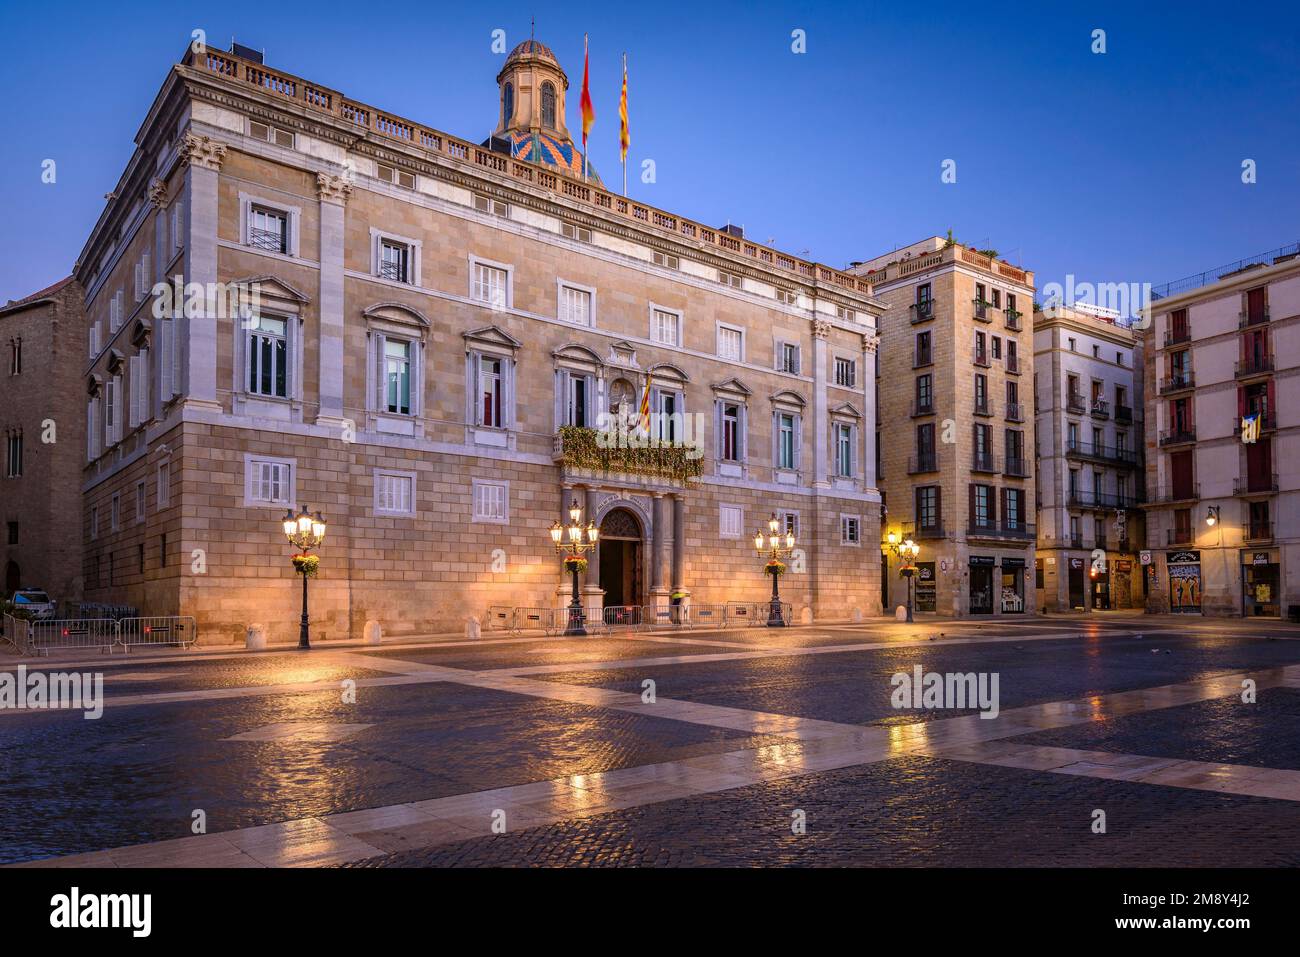 Palazzo della Generalitat di Catalogna e Piazza Sant Jaume di notte e ore blu (Barcellona, Catalogna, Spagna) ESP: Palacio Generalitat de Cataluña Foto Stock